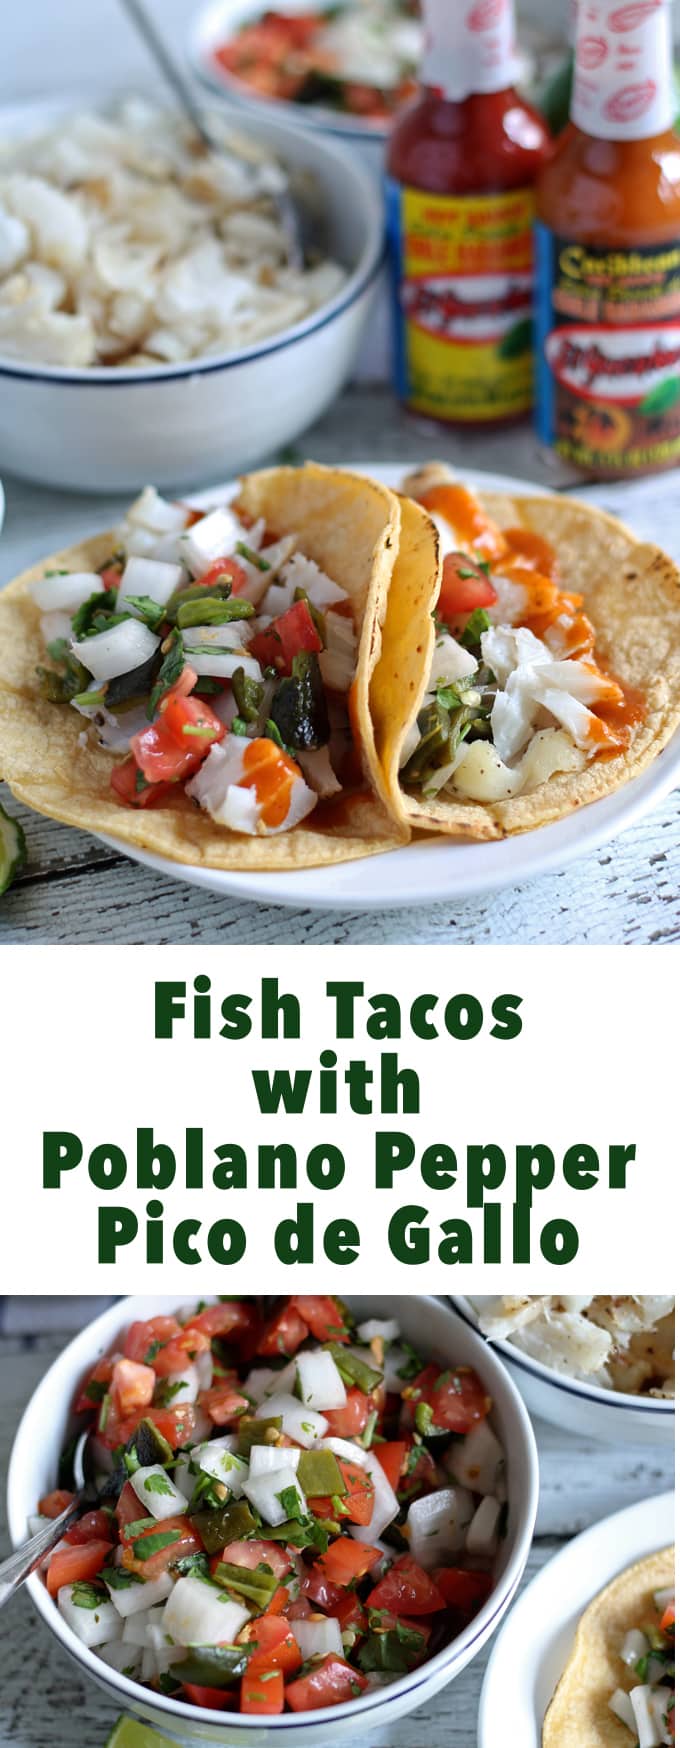 Fish Tacos with Poblano Pepper Pico de Gallo | honeyandbirch.com